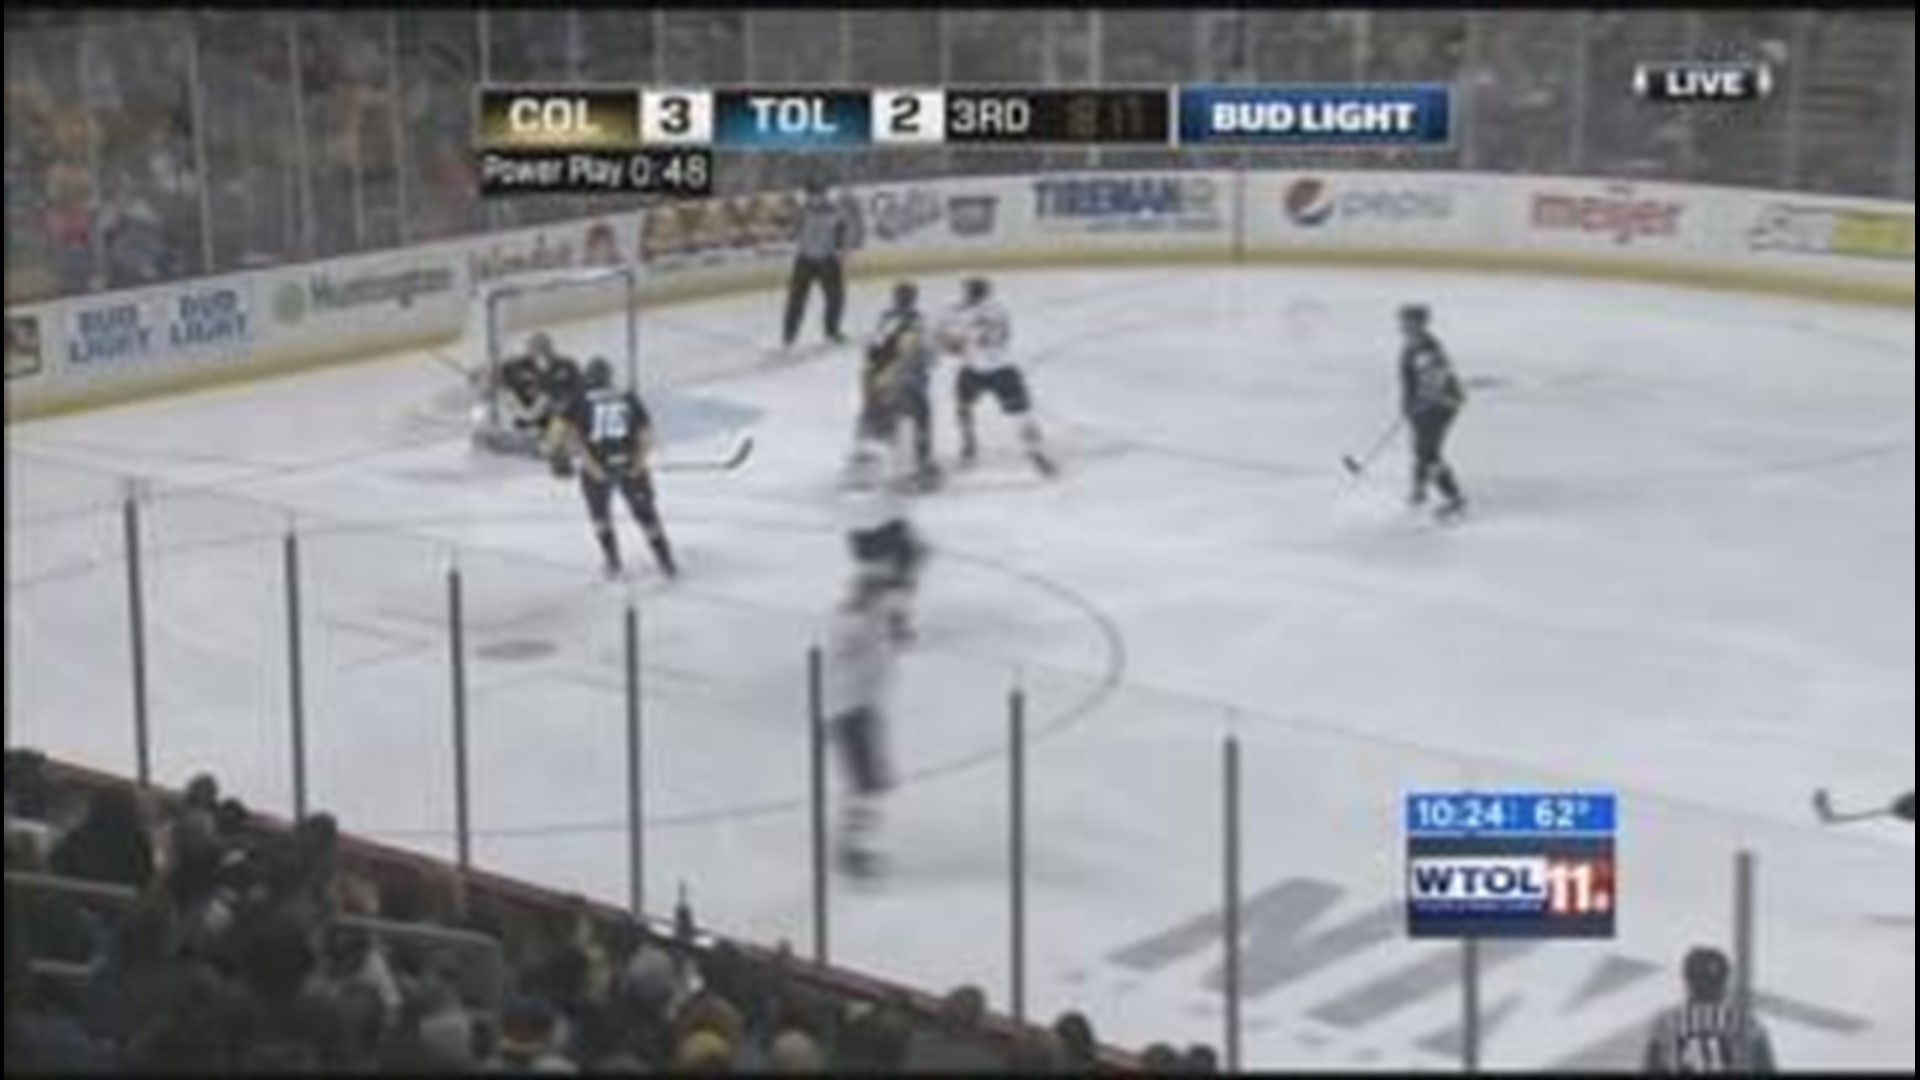 ECHL hockey: Toledo vs. Colorado - Western Conference Finals game 2